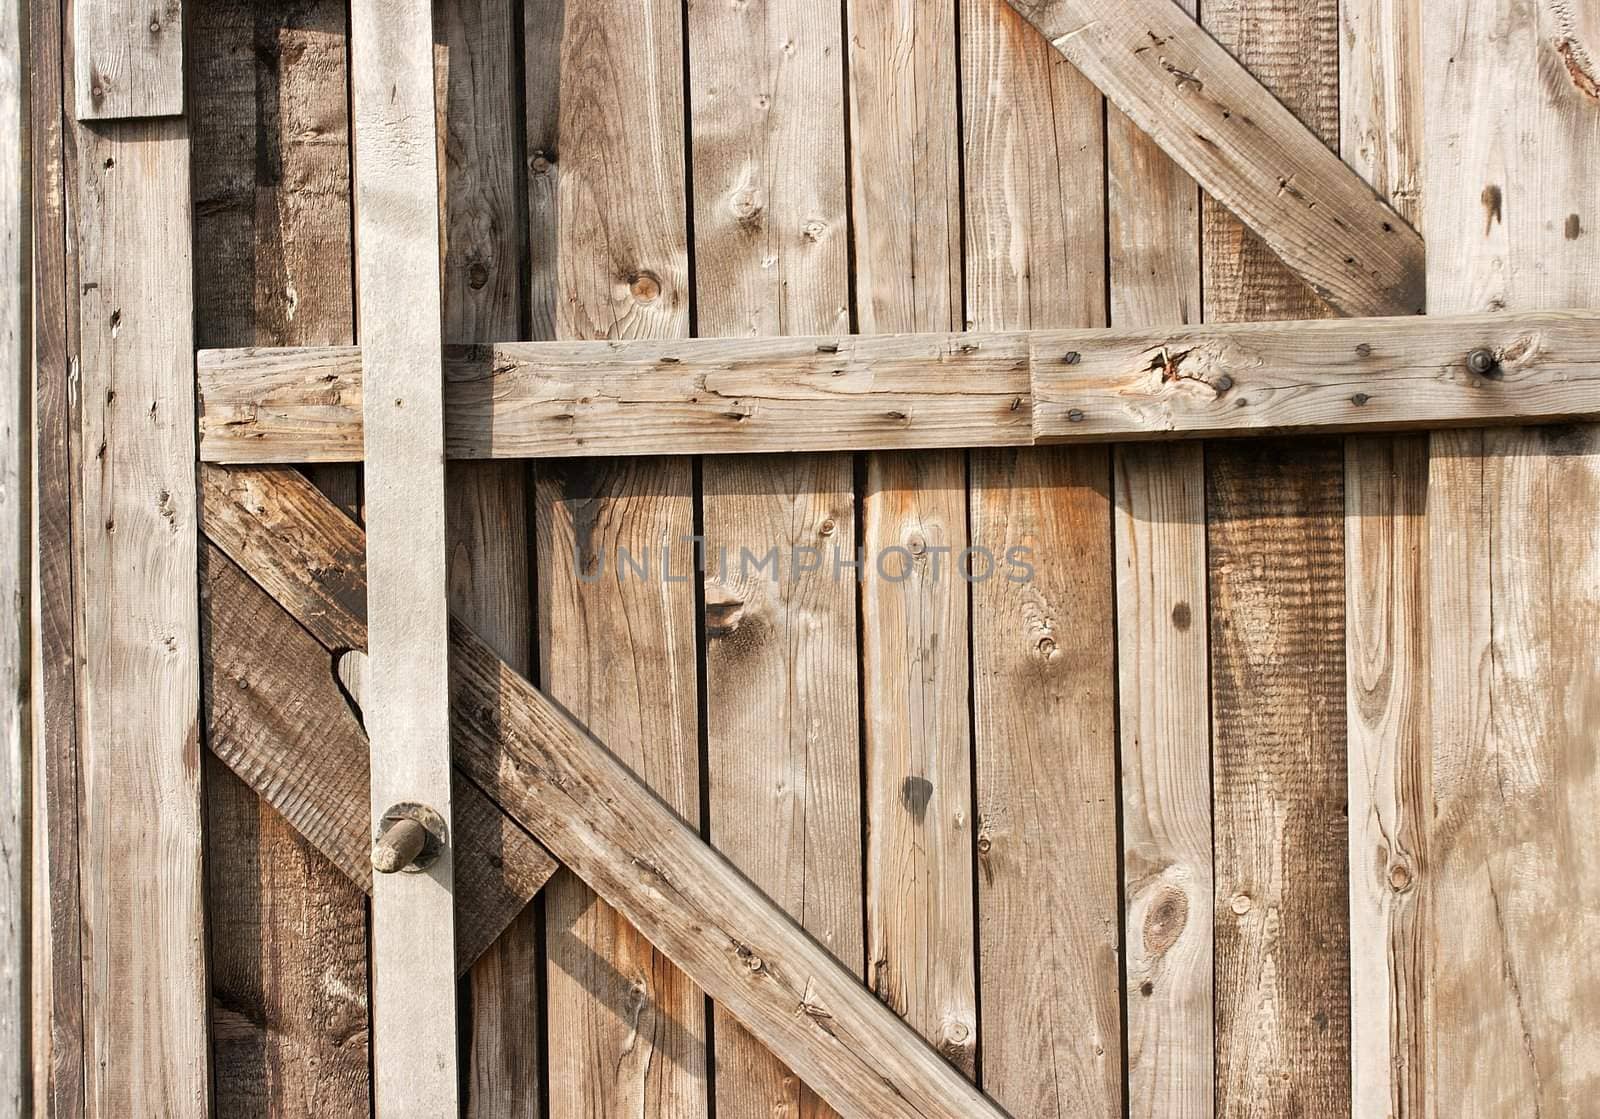 Wooden texture of an old barn door